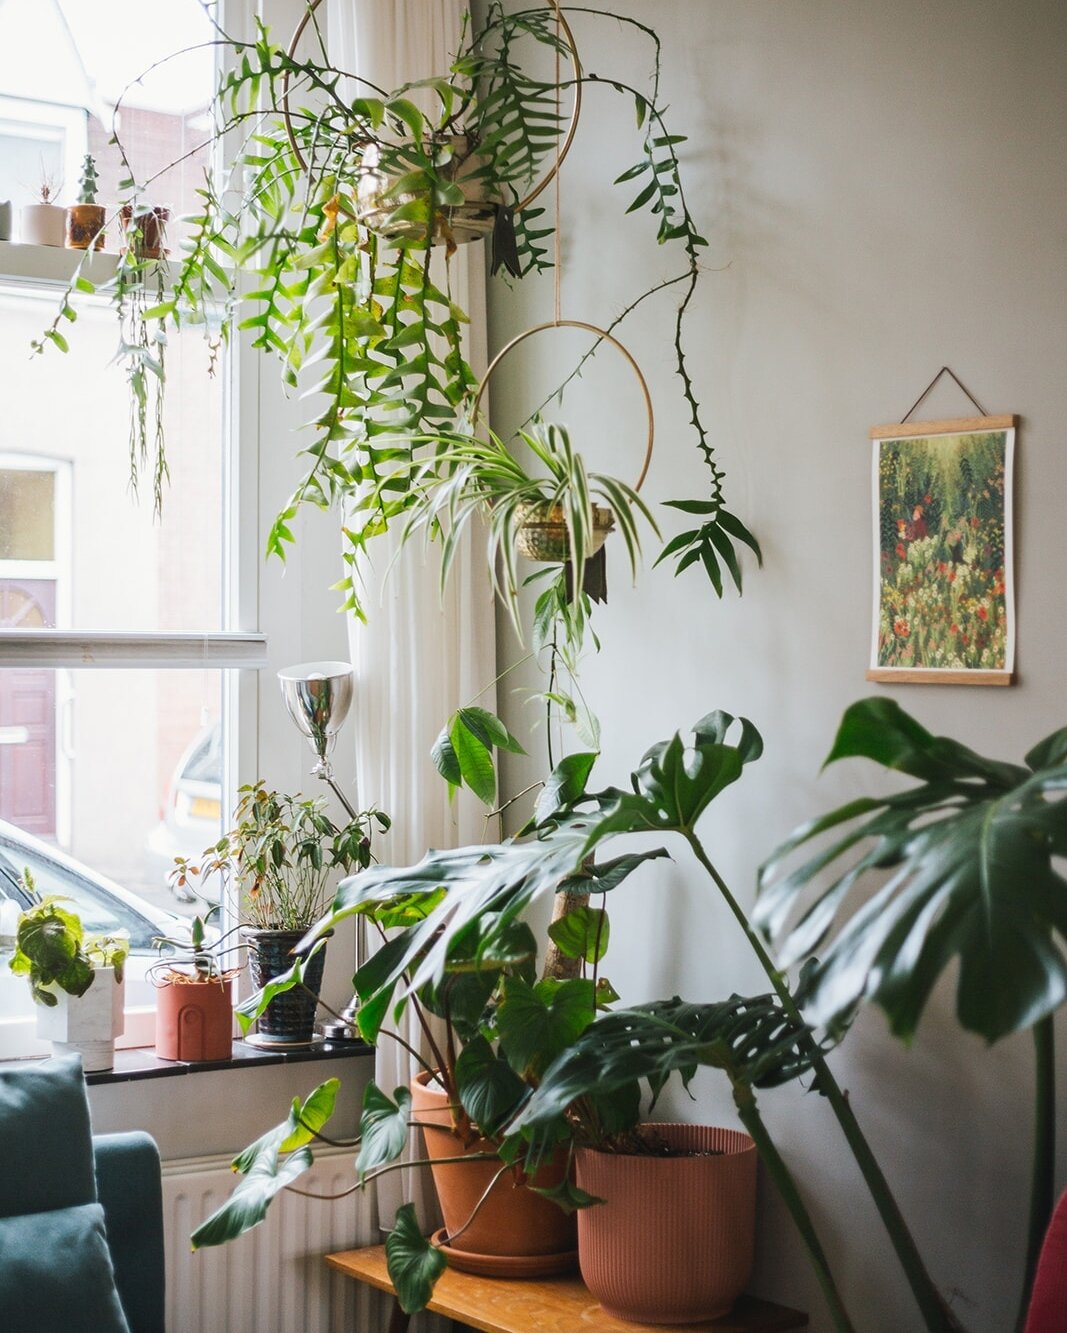 🇬🇧👇 De voordelen van hangplanten: instant jungle gevoel. Je voelt je meteen omringd door planten, zodra ze de hoogte in gaan. Je bespaard ruimte, want het kost geen vloeroppervlakte of plekjes op de kast. Dat maakt hangplanten ideaal om meer groen